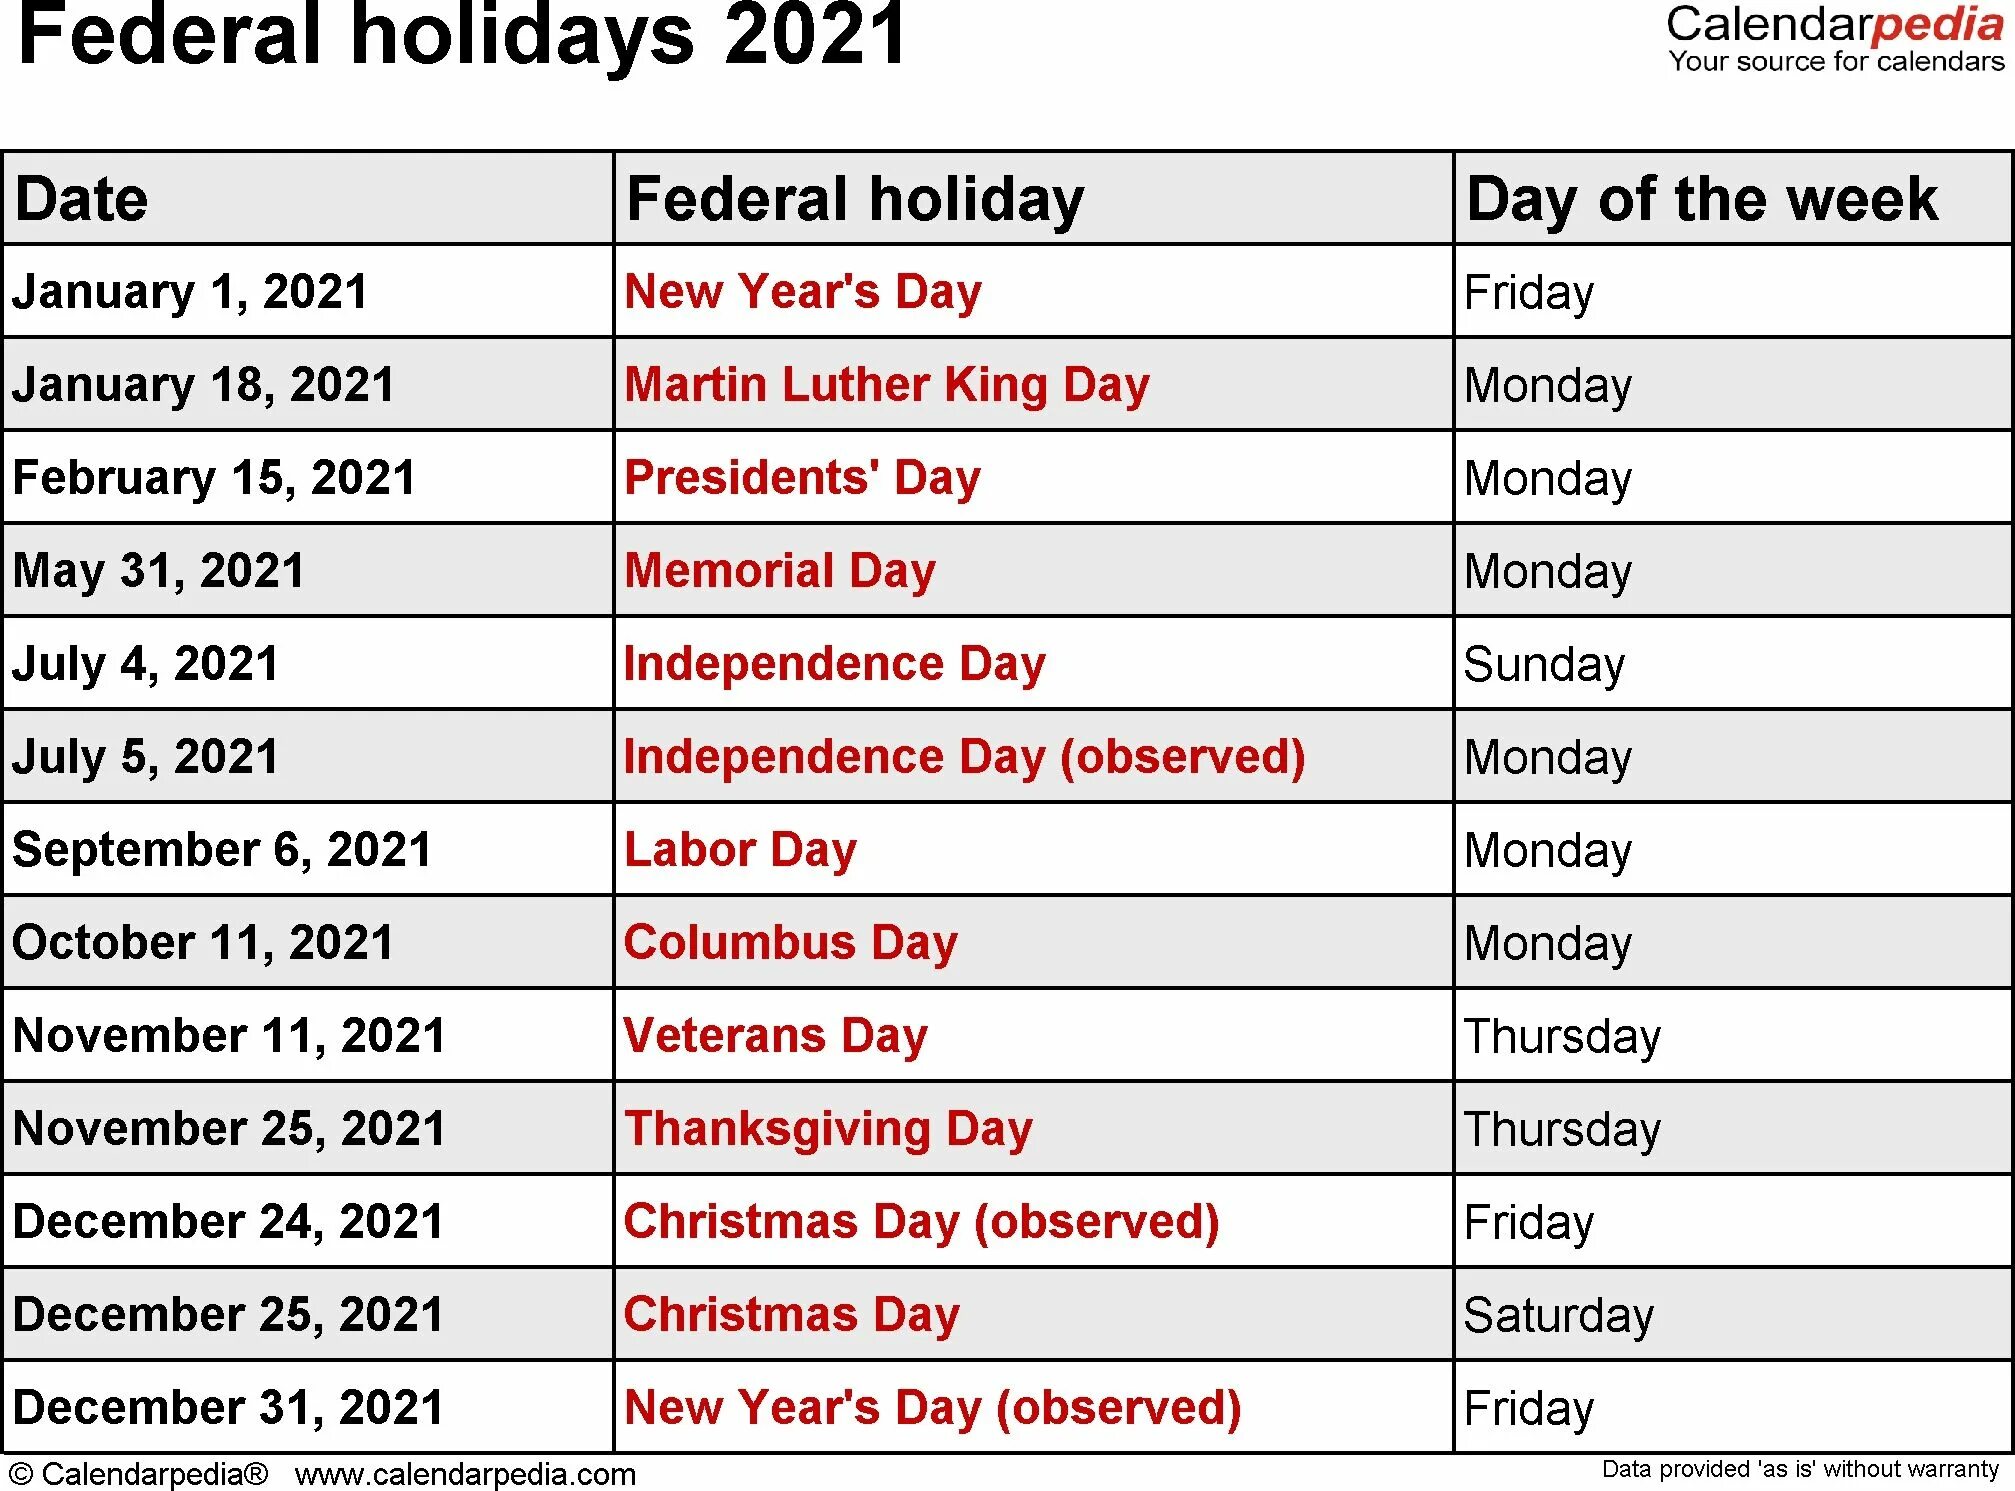 Holidays in your country. Американские праздники список с датами. Праздники в Америке список. Календарь праздников США. Календарь американских праздников.